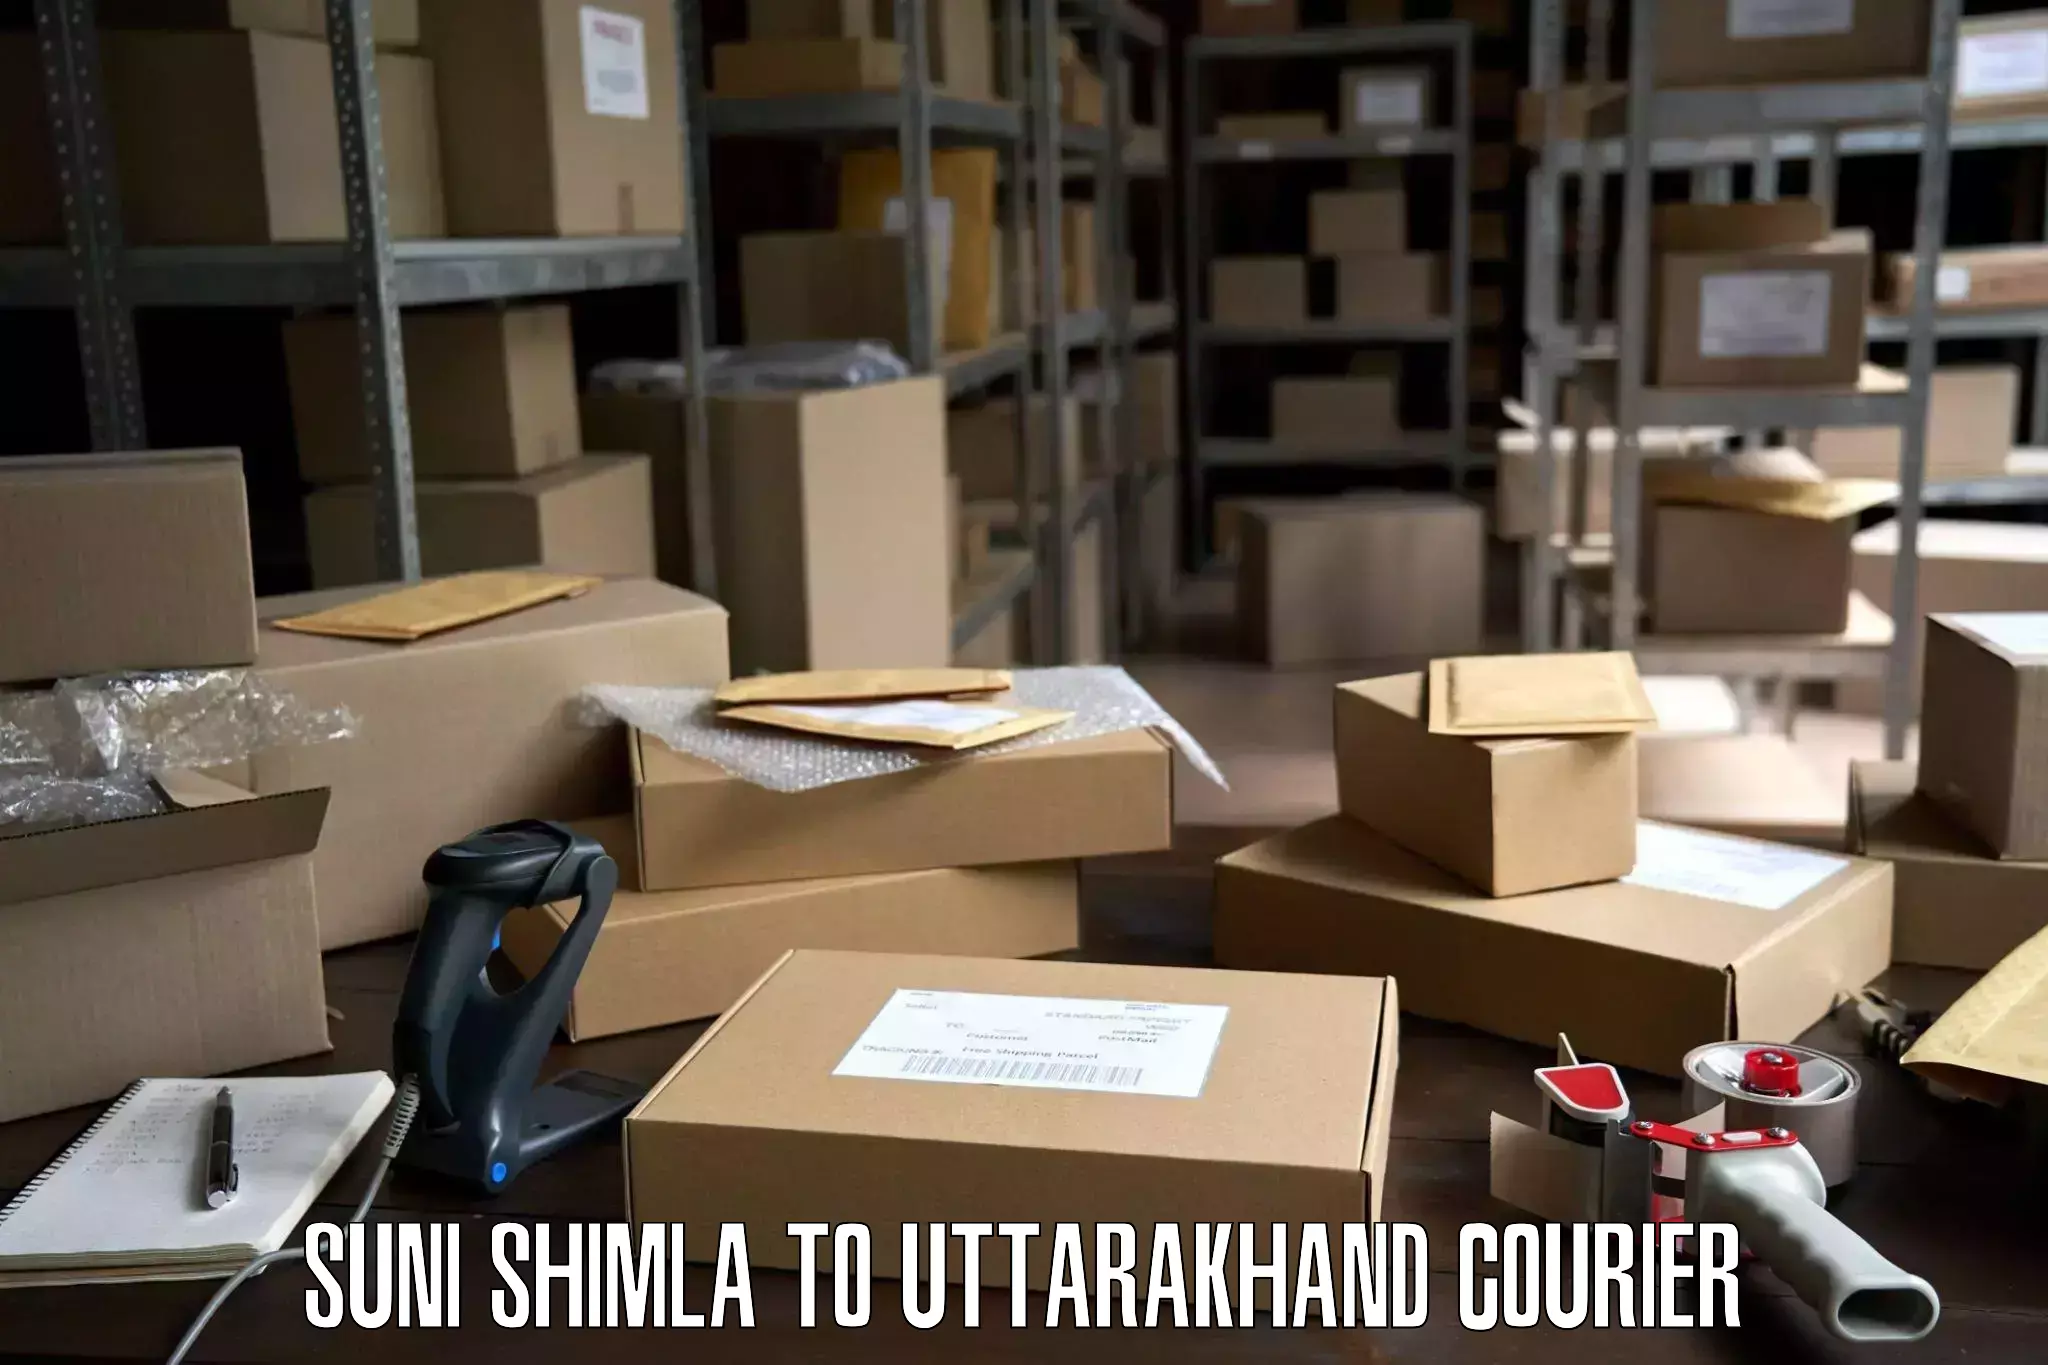 Furniture delivery service Suni Shimla to Rudrapur